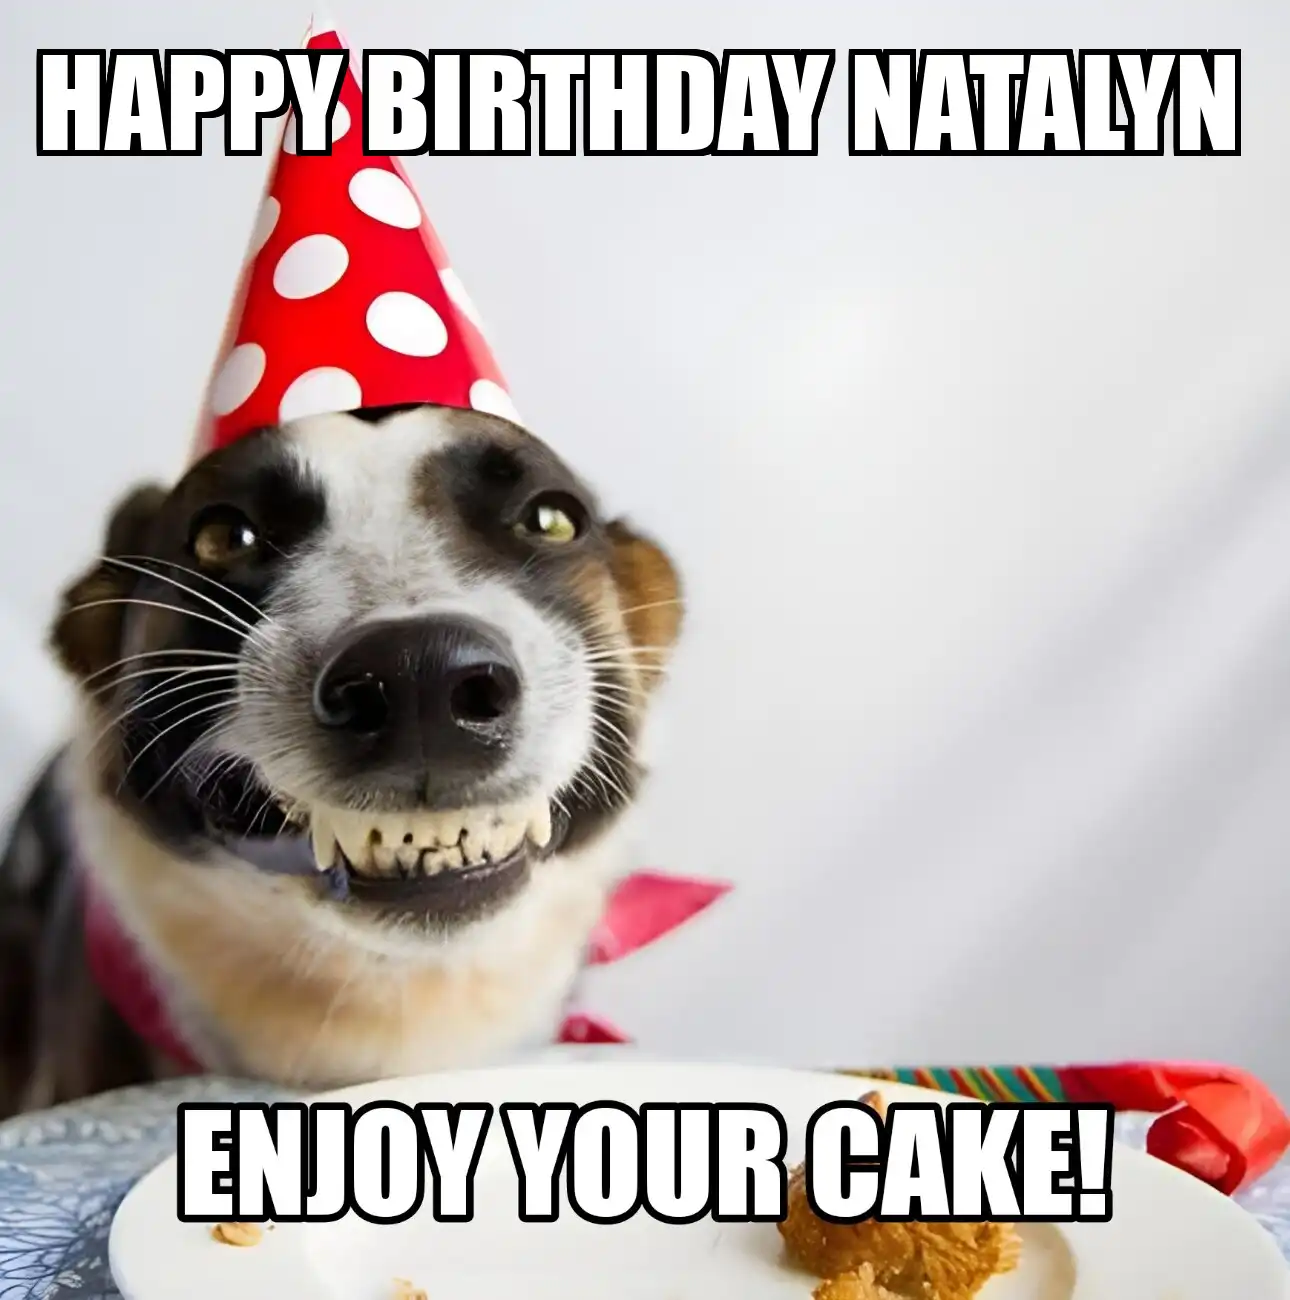 Happy Birthday Natalyn Enjoy Your Cake Dog Meme